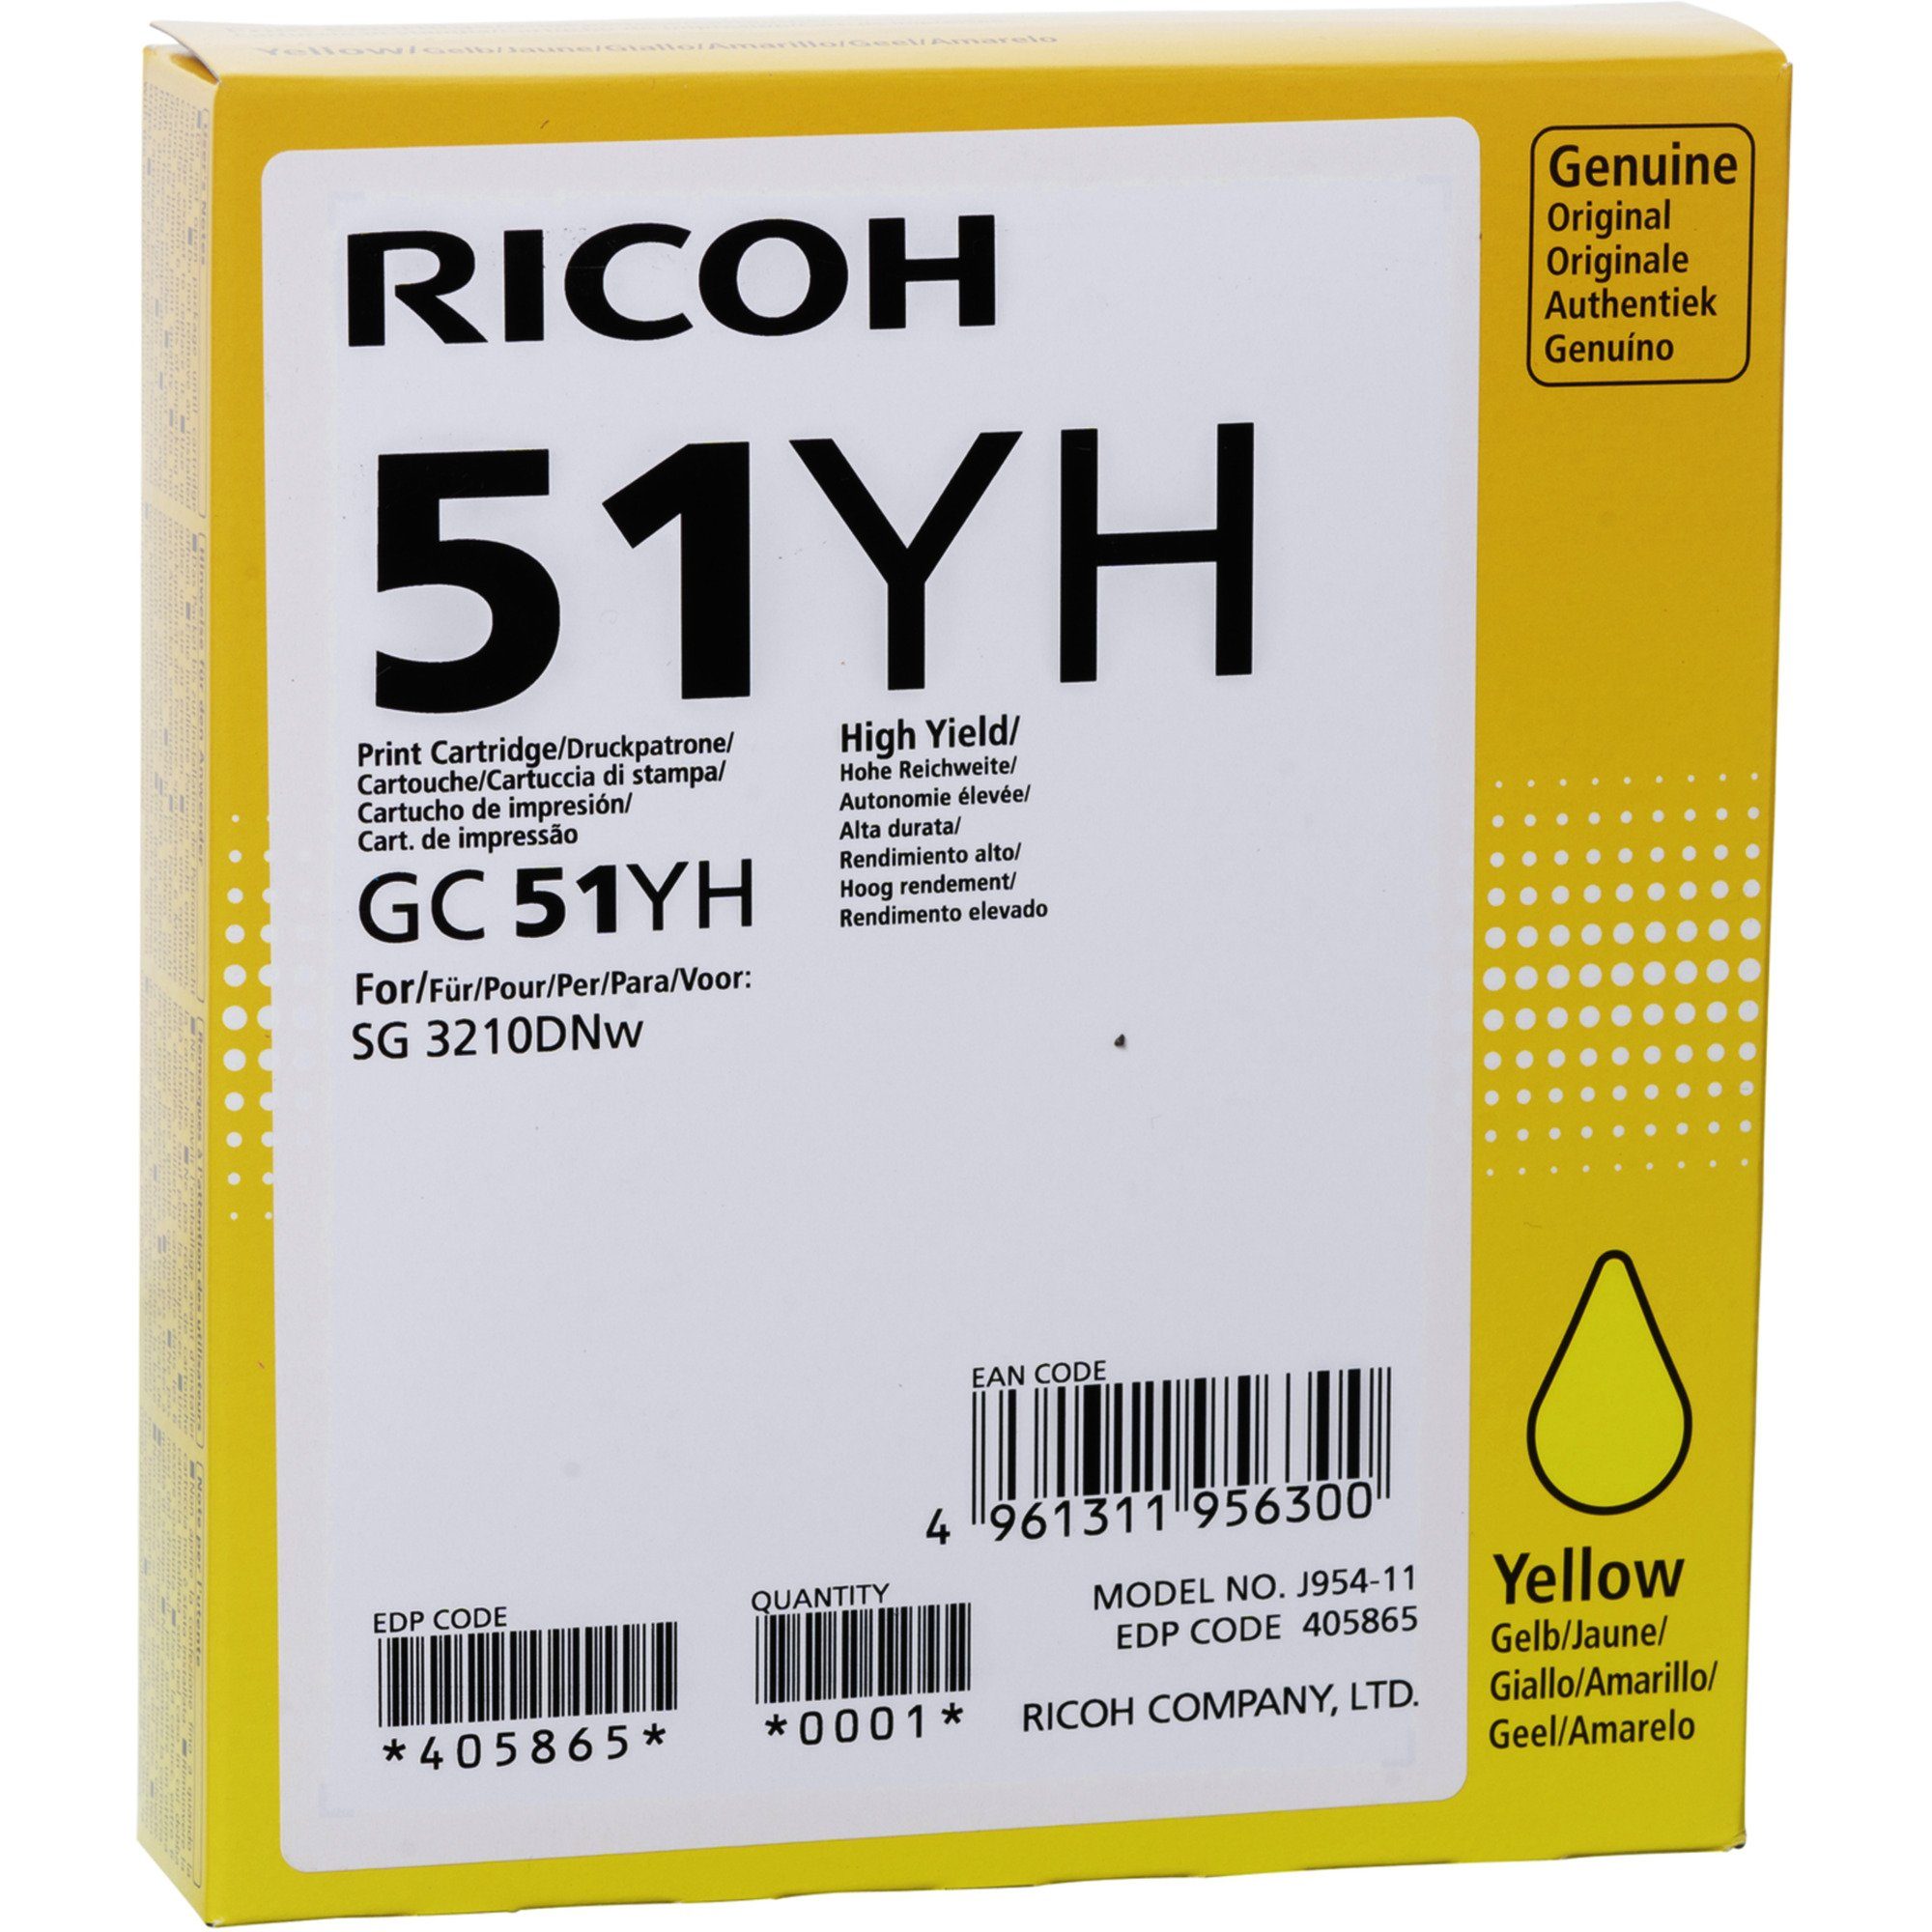 Ricoh Ricoh Tinte gelb 405865 Tintenpatrone | Tintenpatronen